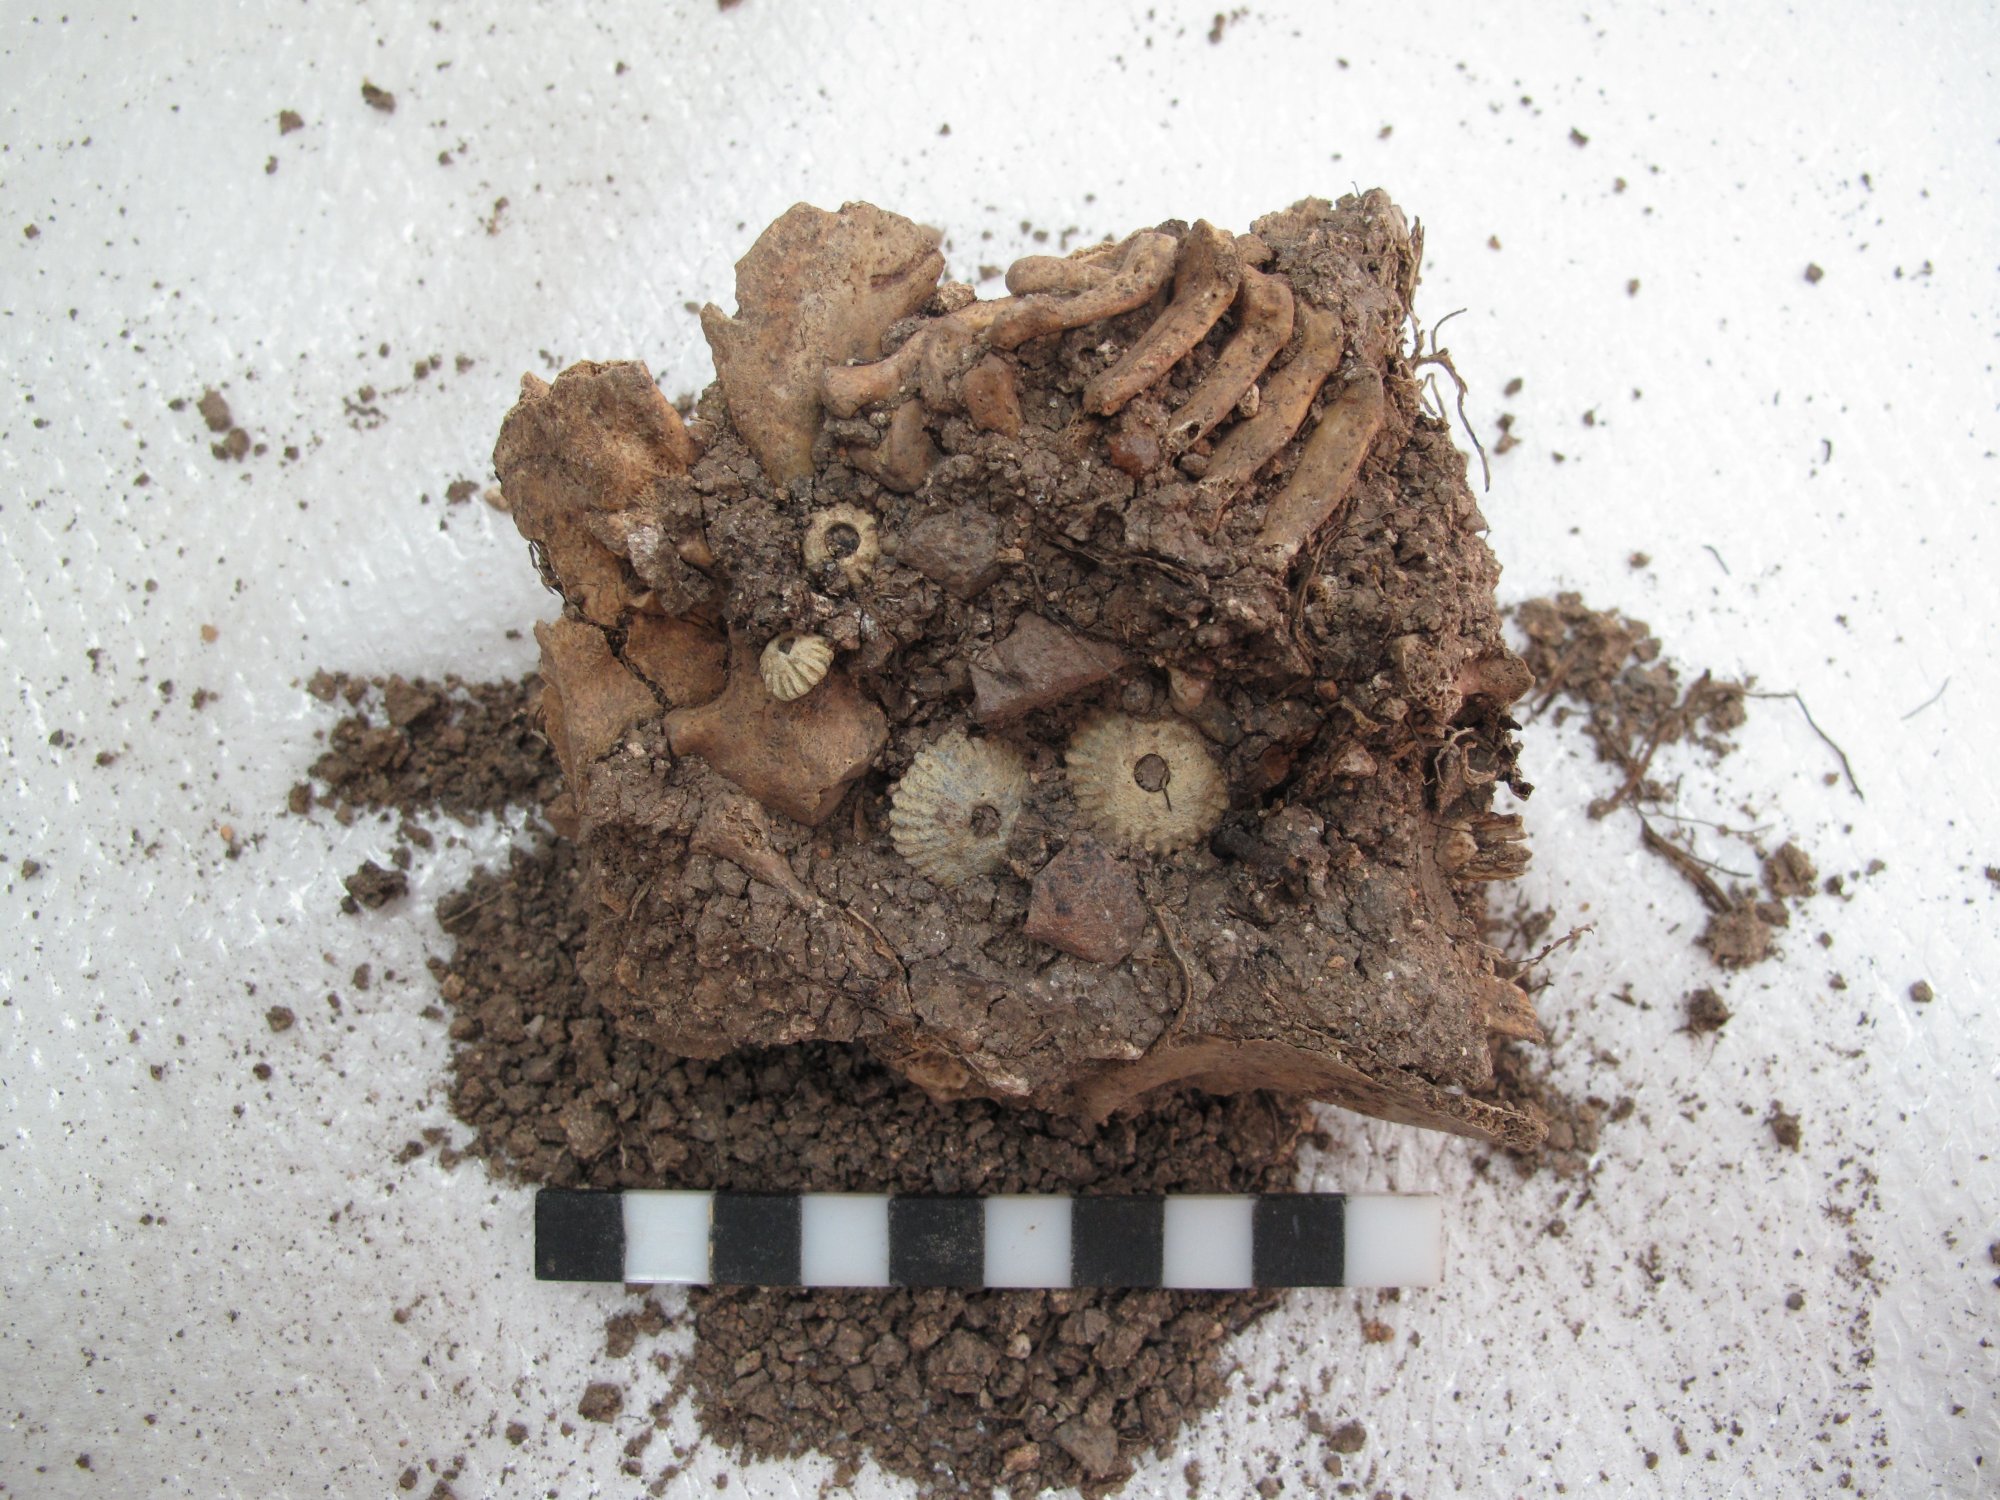 Αίγινα: Σκελετό μωρού με σύνδρομο Down στην Αρχαία Ελλάδα έφερε στο φως ανασκαφή